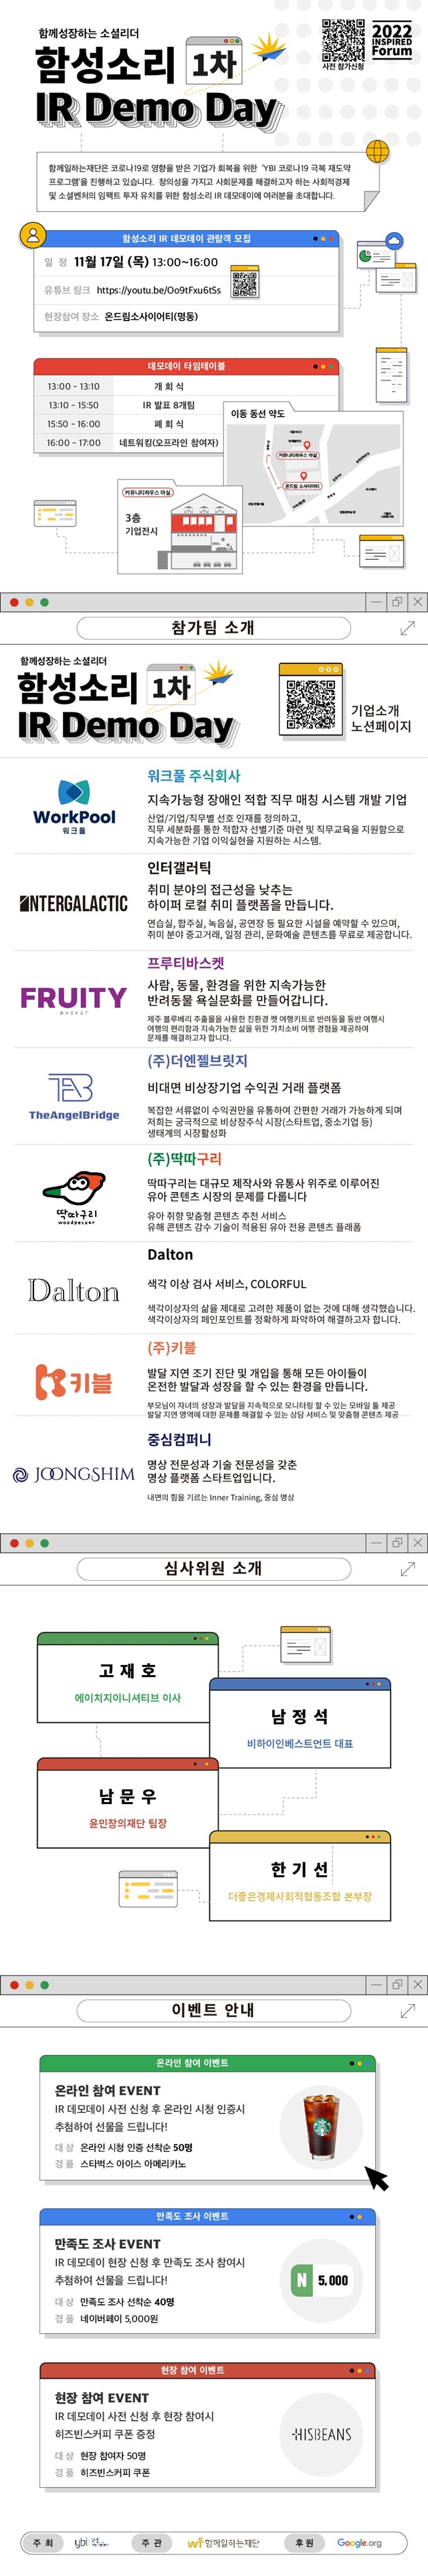 함께일하는재단, '함성소리 1차 IR Demo Day' 개최